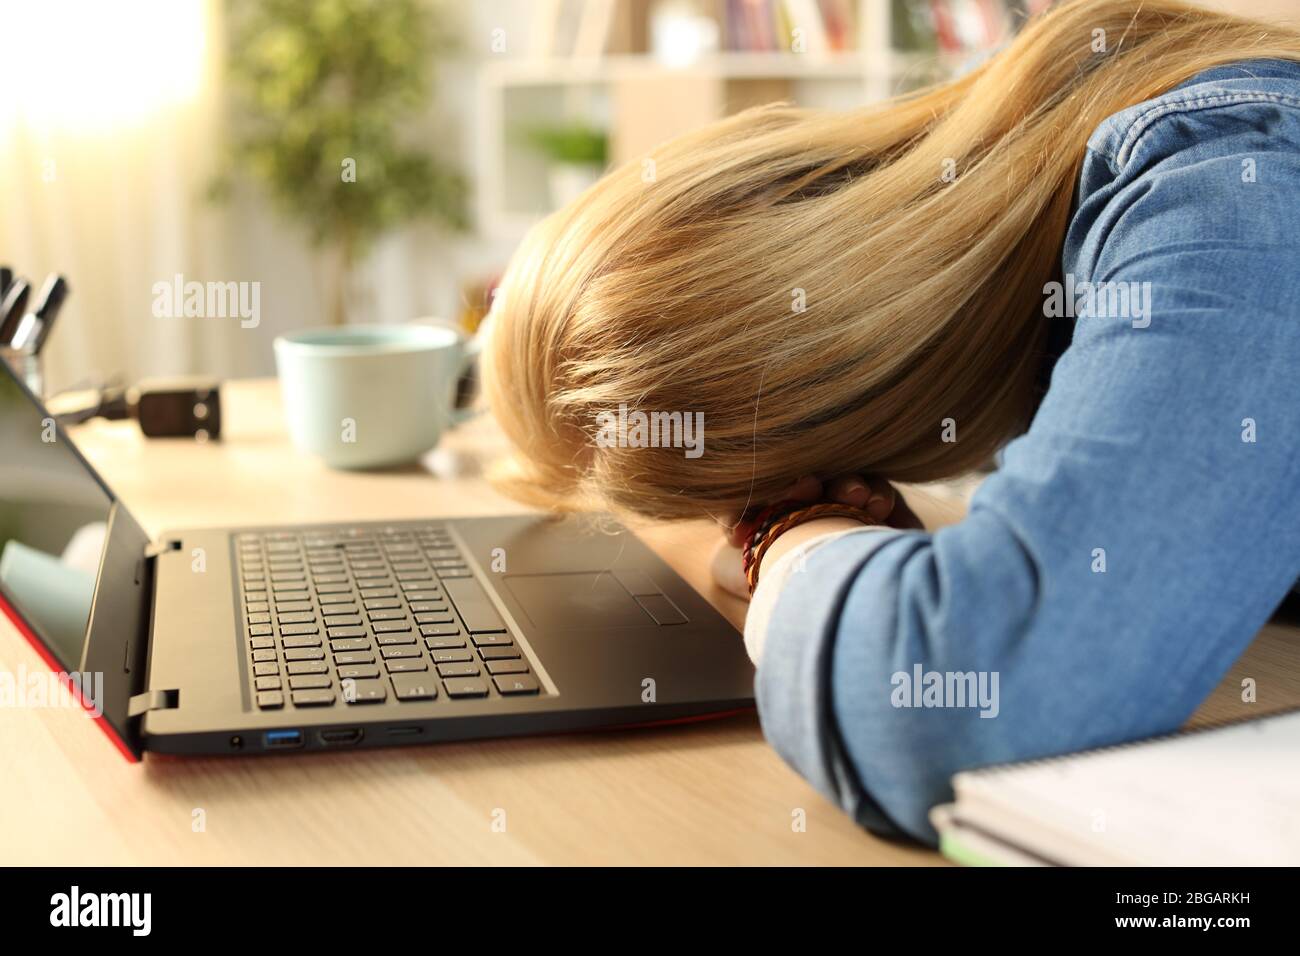 Cerca de una estudiante cansada y sobrecargada durmiendo sobre el escritorio durante el día en casa Foto de stock